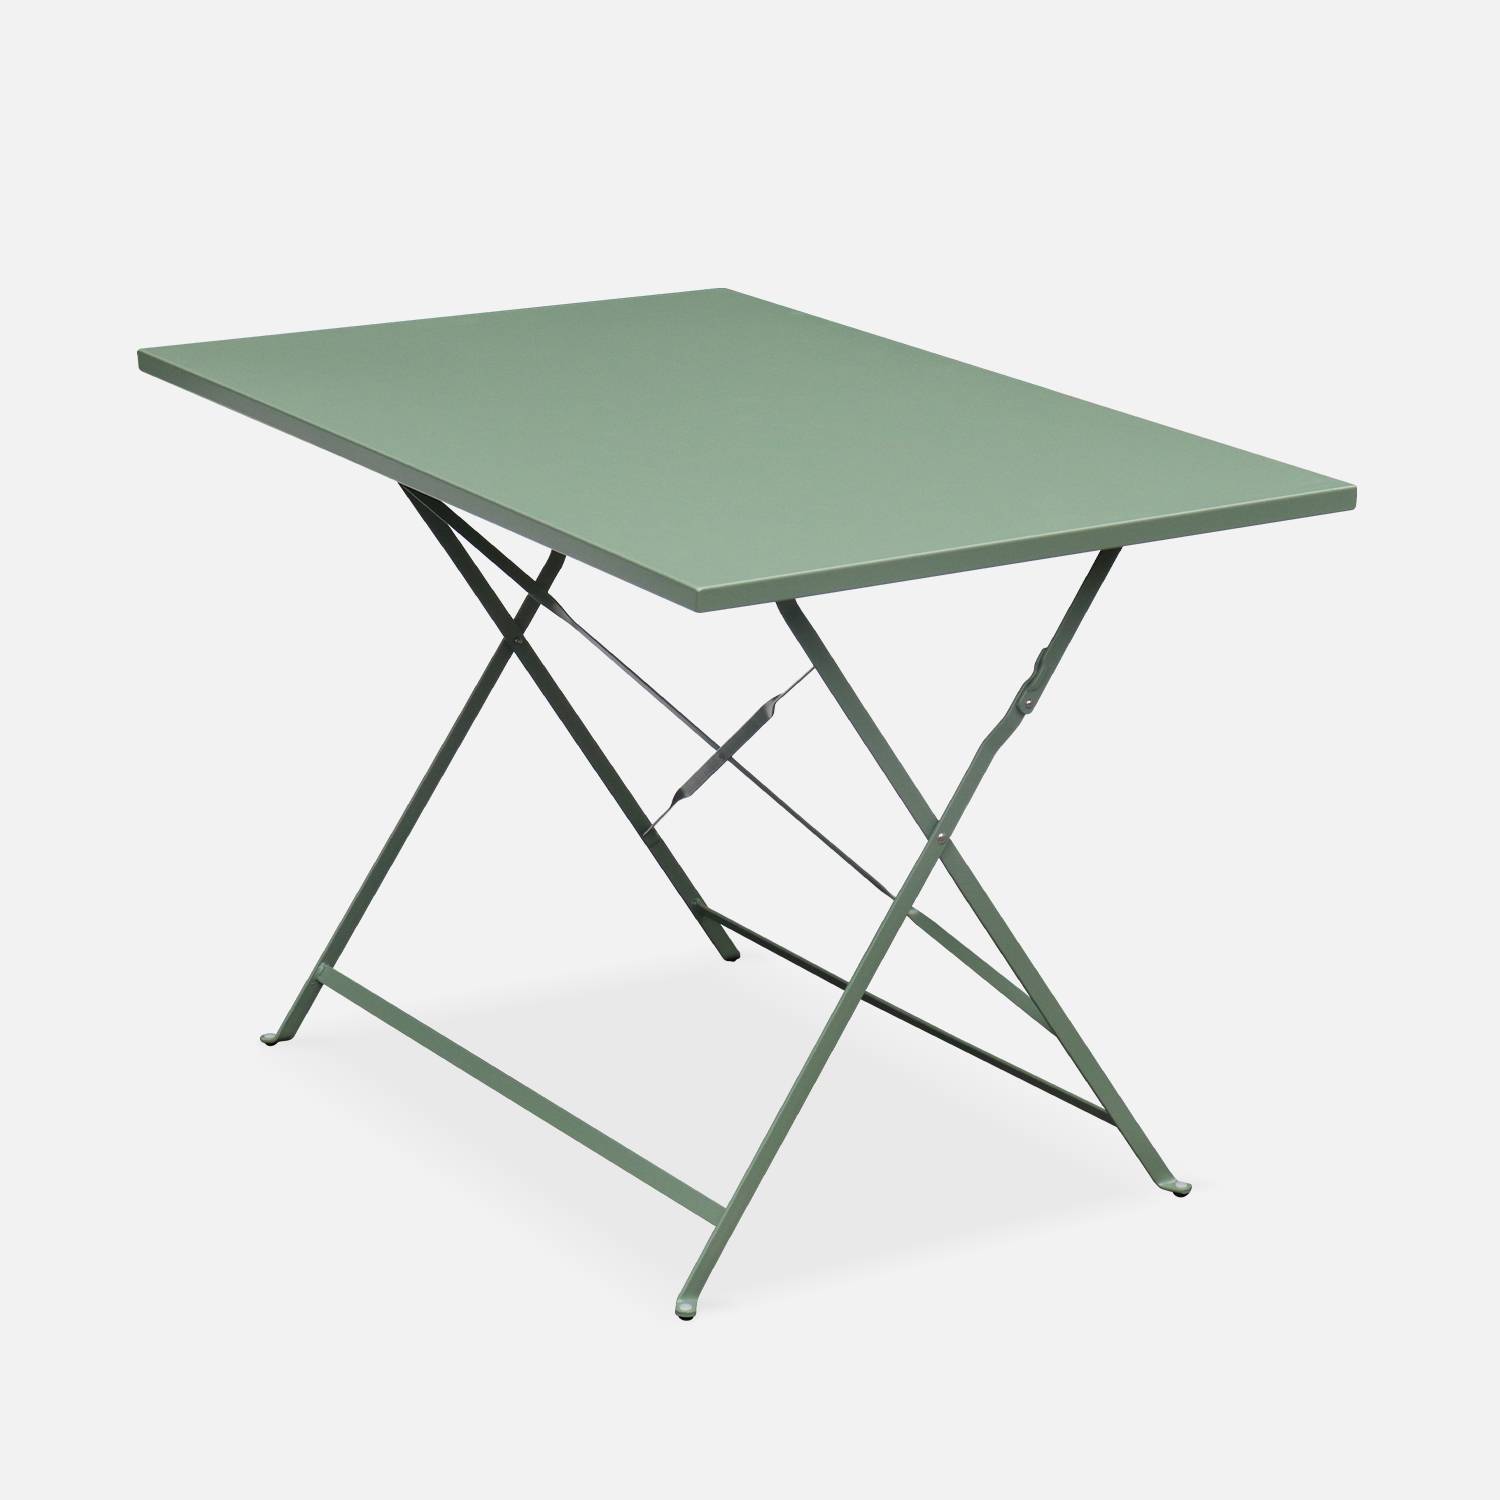 Klappbare Bistro-Gartengarnitur - Rechteckig Emilia graugrün - 110 x 70 cm großer Tisch mit vier Klappstühlen aus pulverbeschichtetem Stahl Photo3